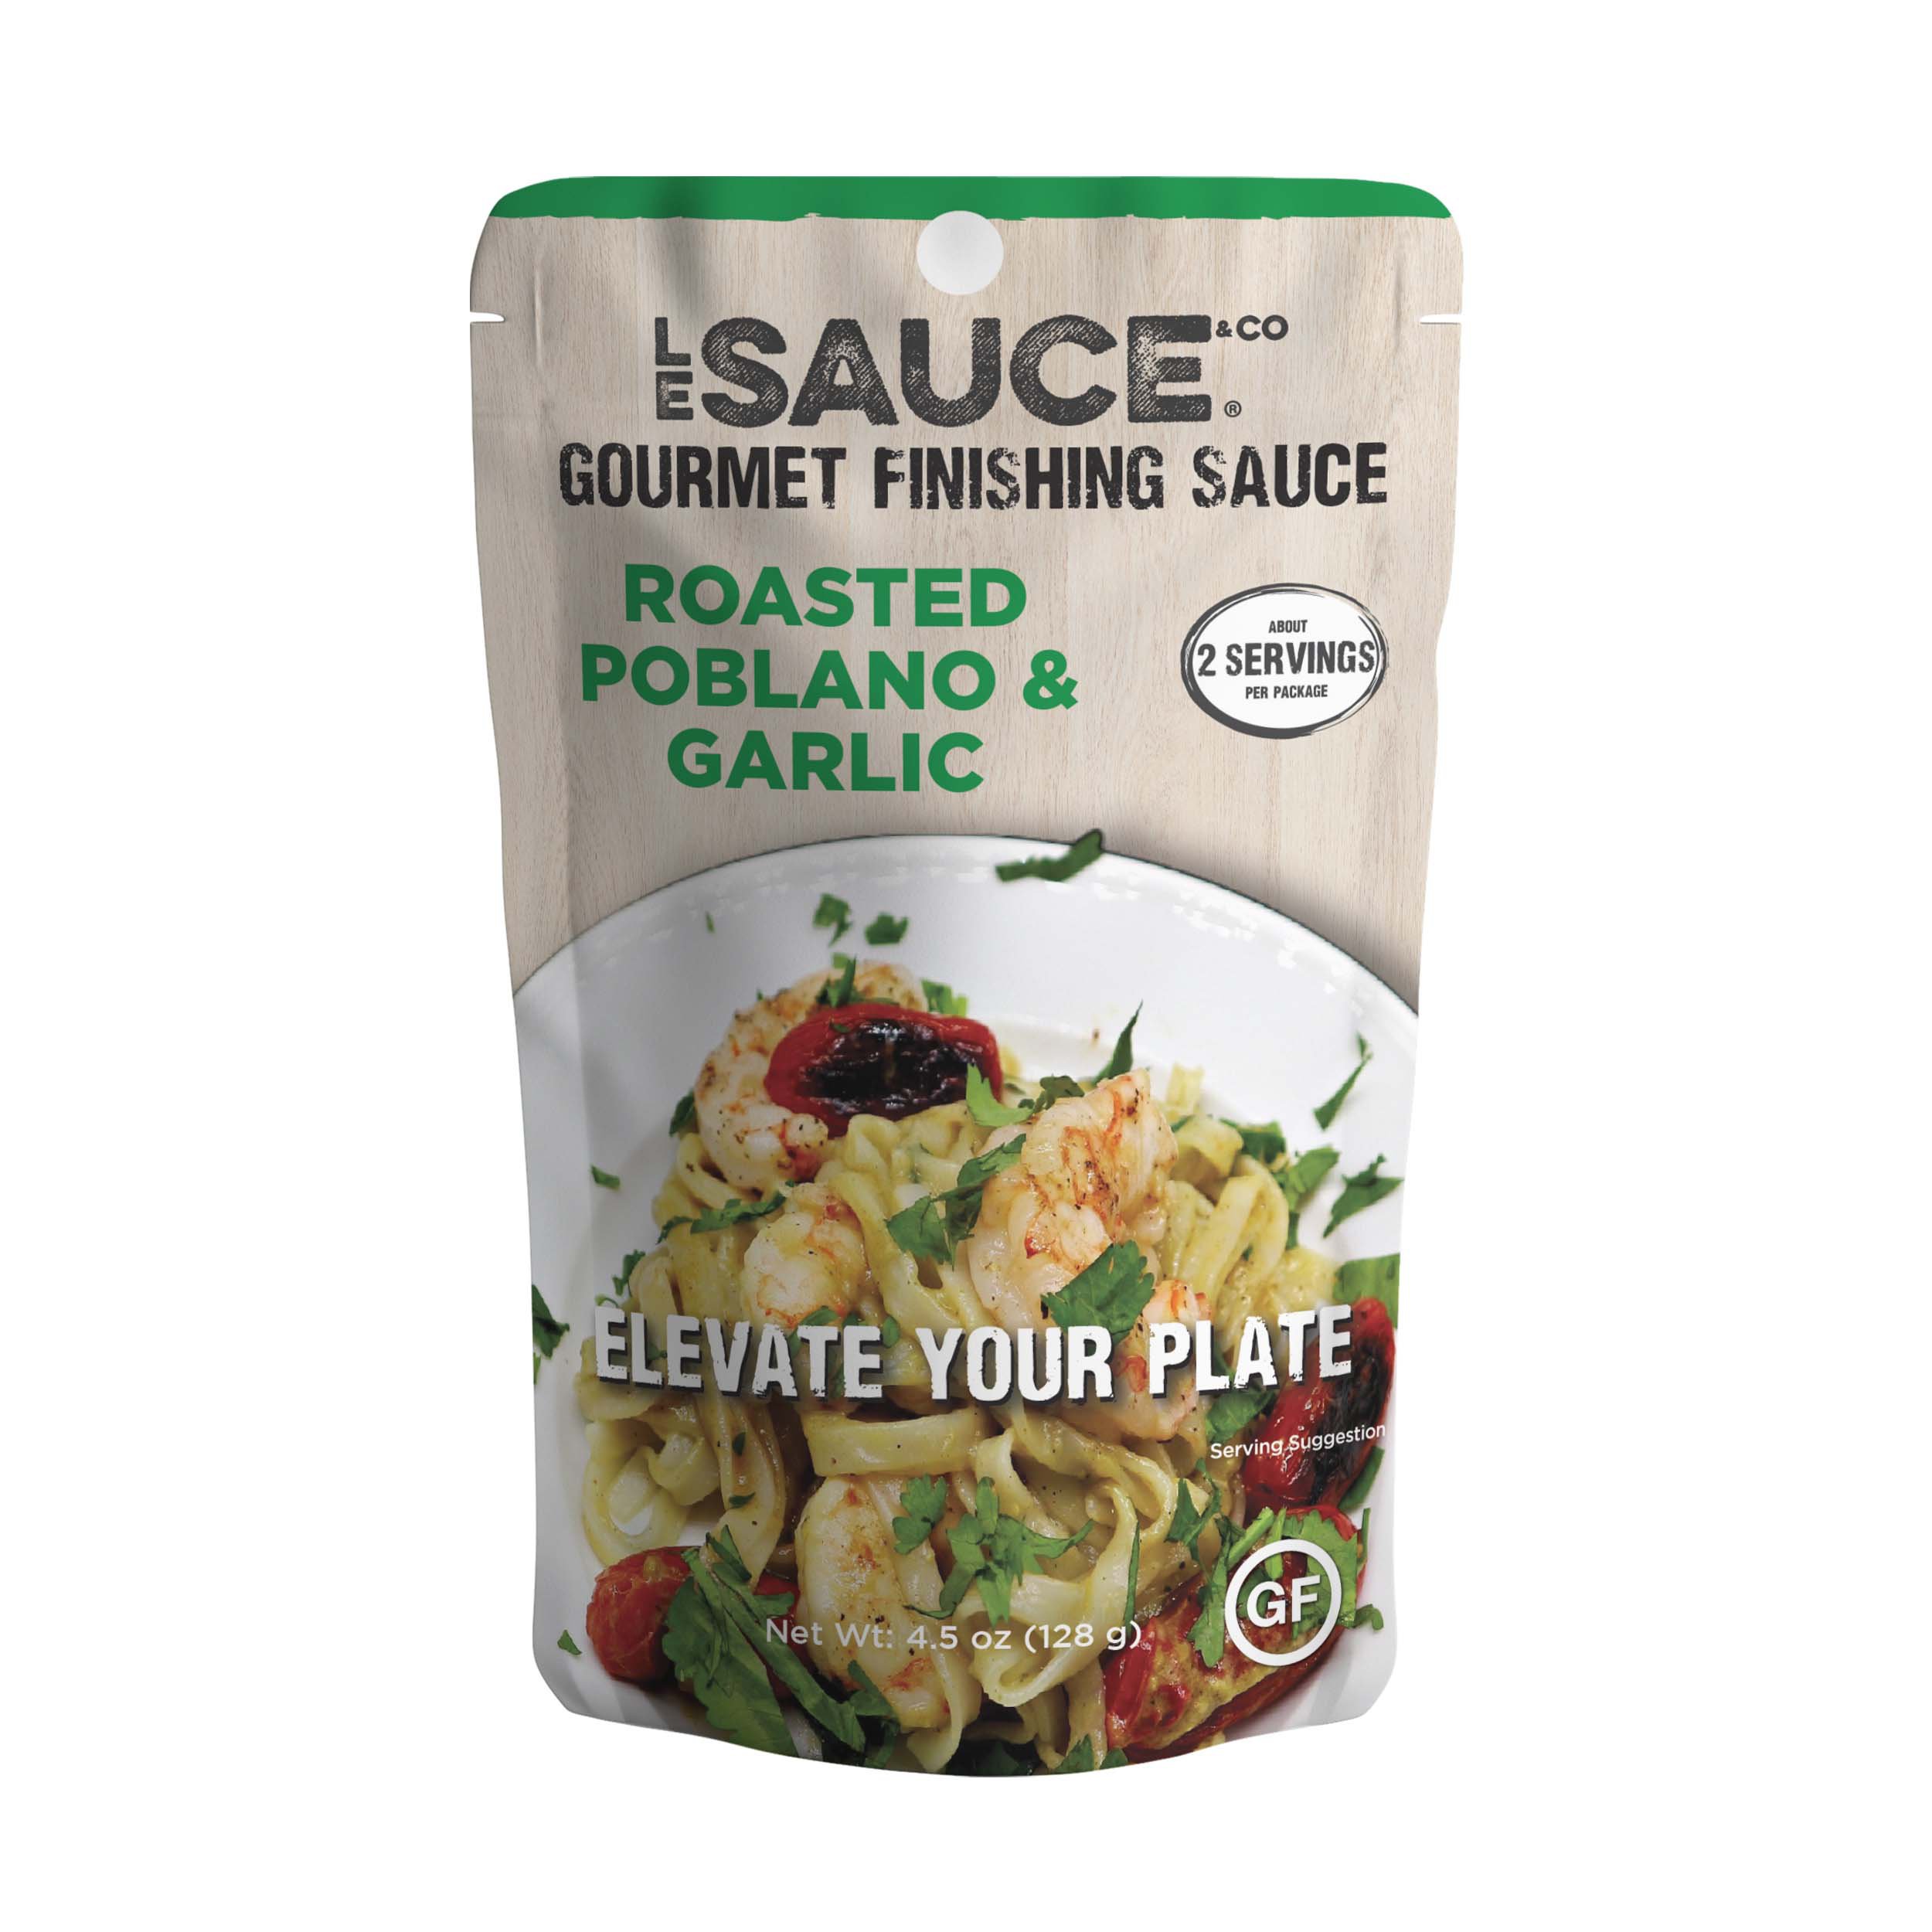 Le Sauce & Co. Roasted Poblano & Garlic Sauce - Shop Specialty